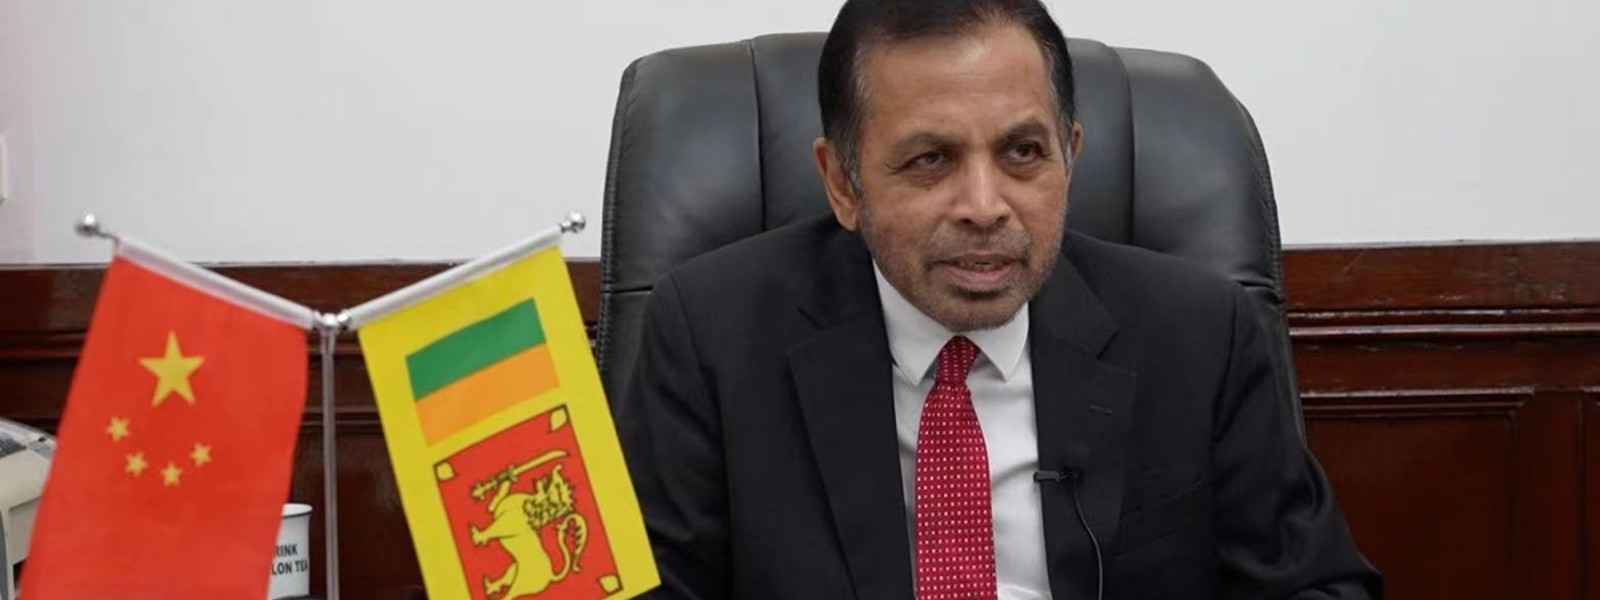 China’s achievements an inspiration for Sri Lanka: Ambassador Kohona